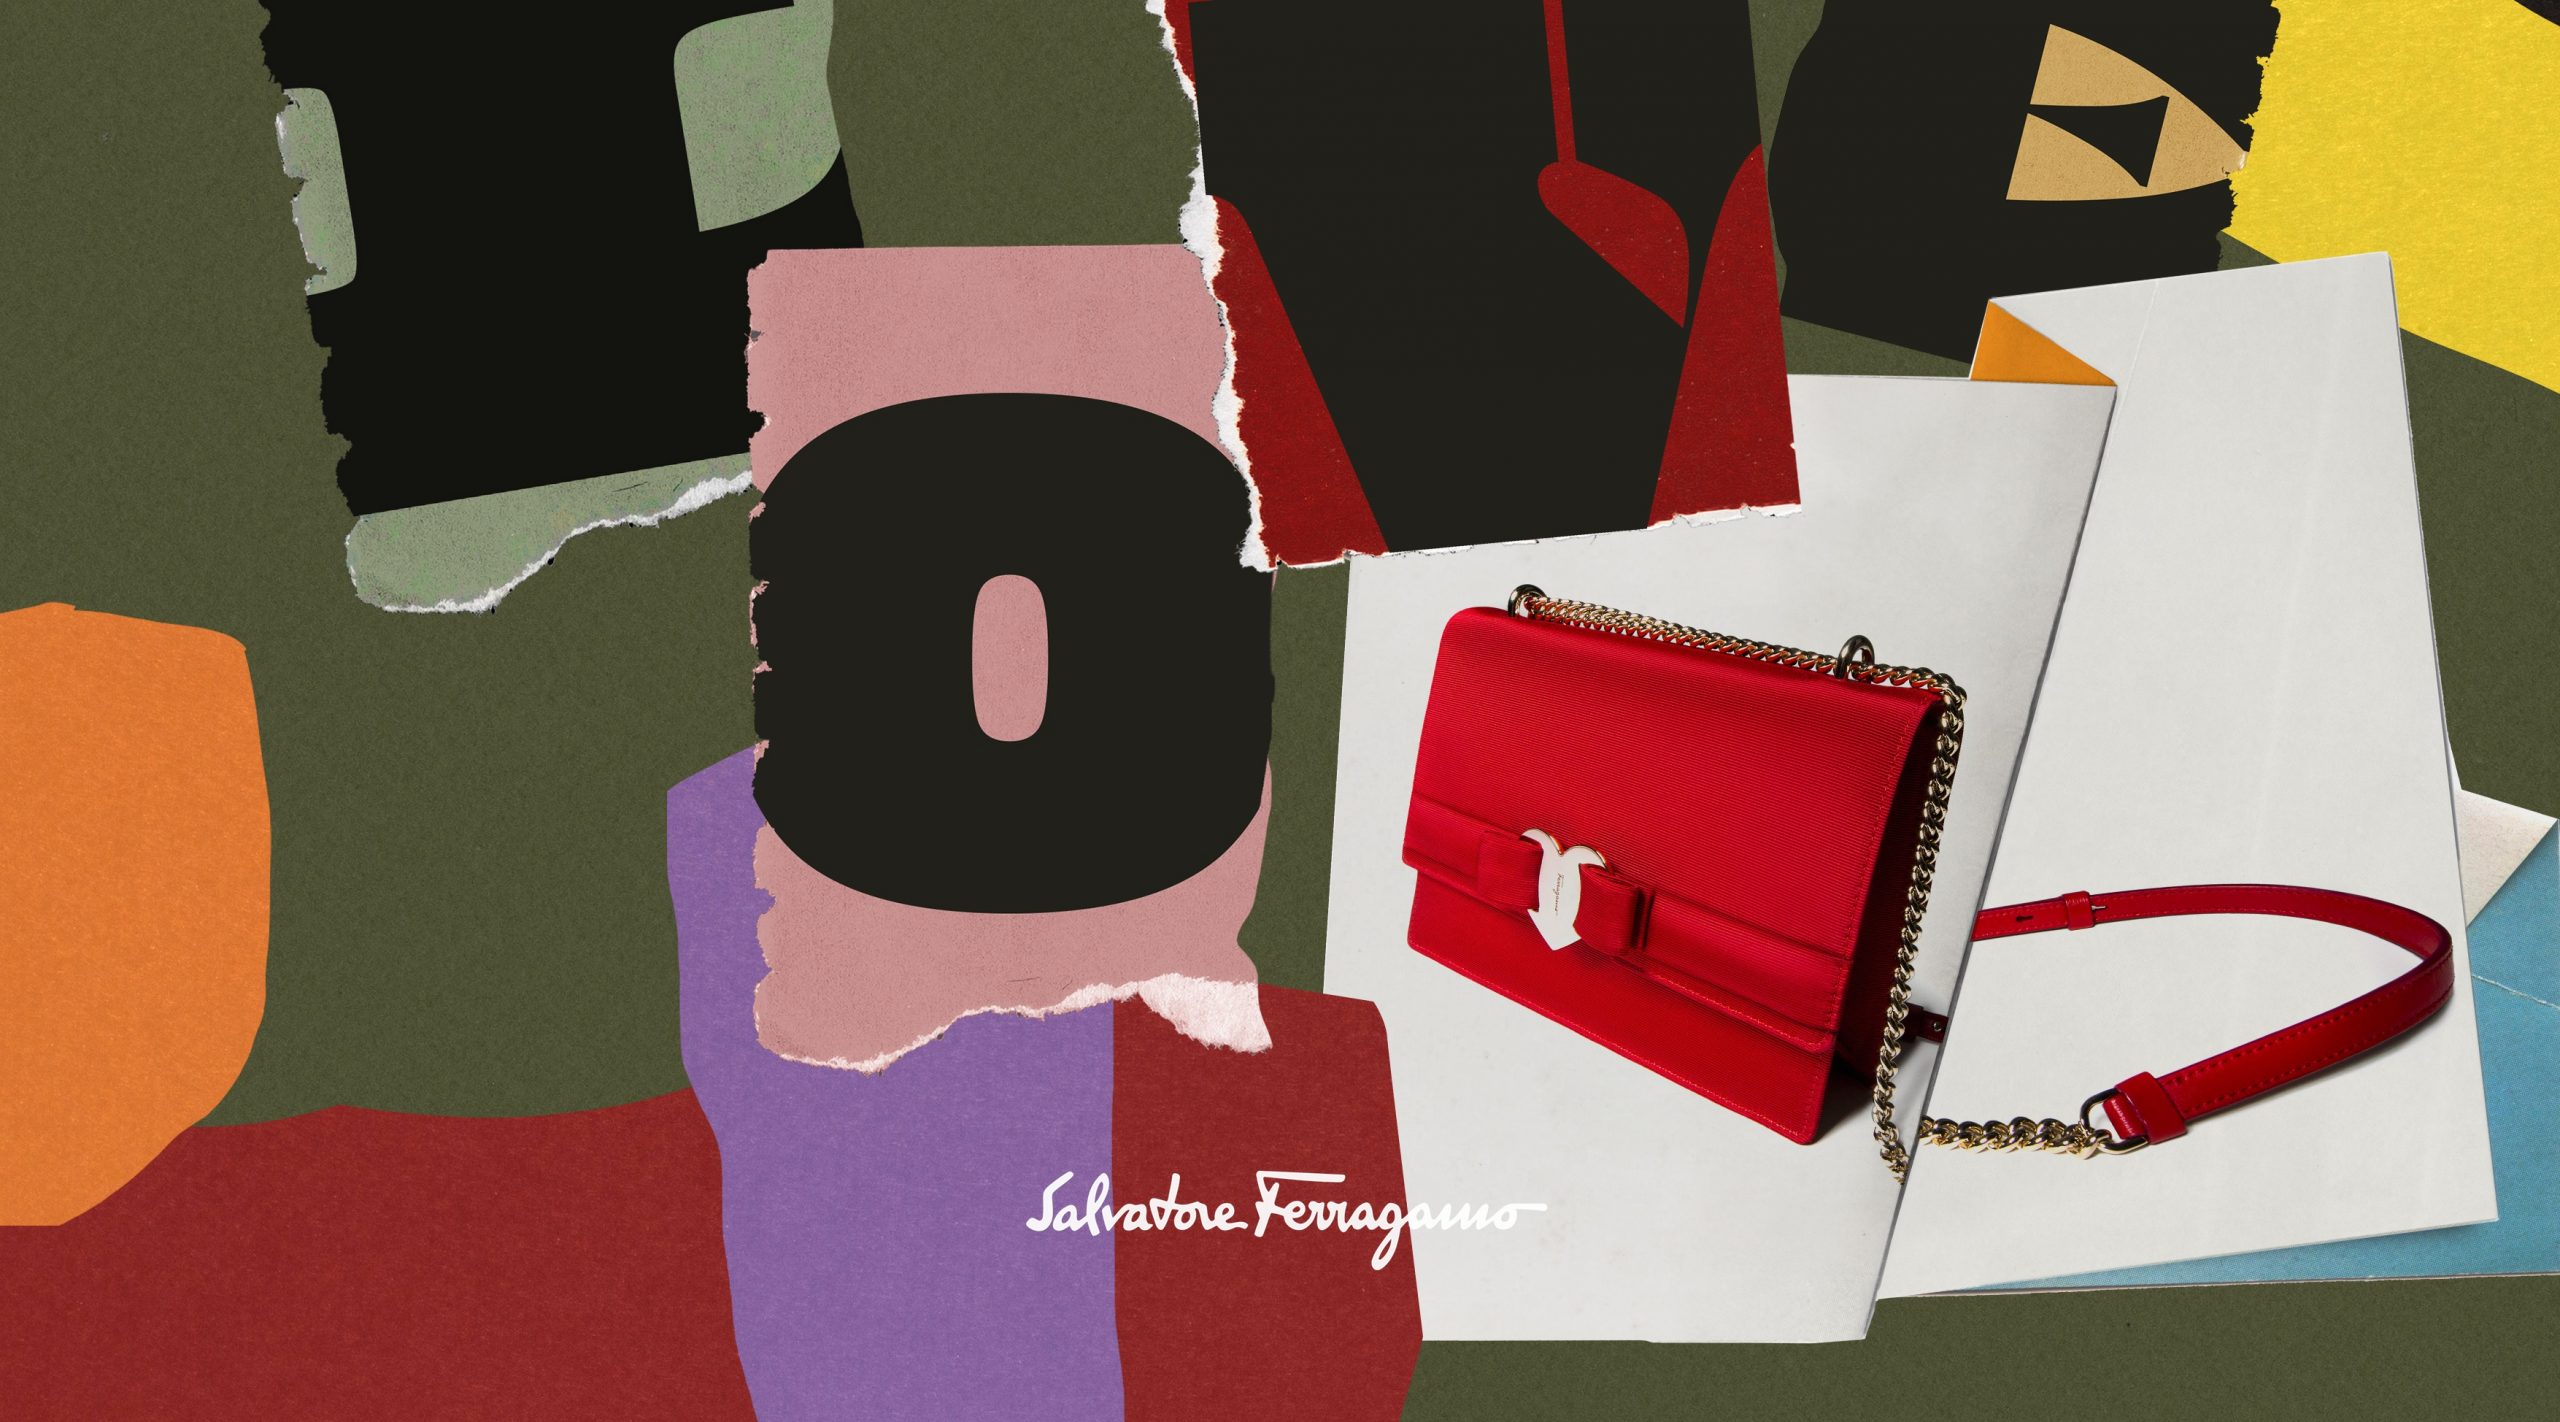 Salvatore Ferragamo gợi ý quà tặng tình yêu với chiếc túi khóa tim sắc đỏ